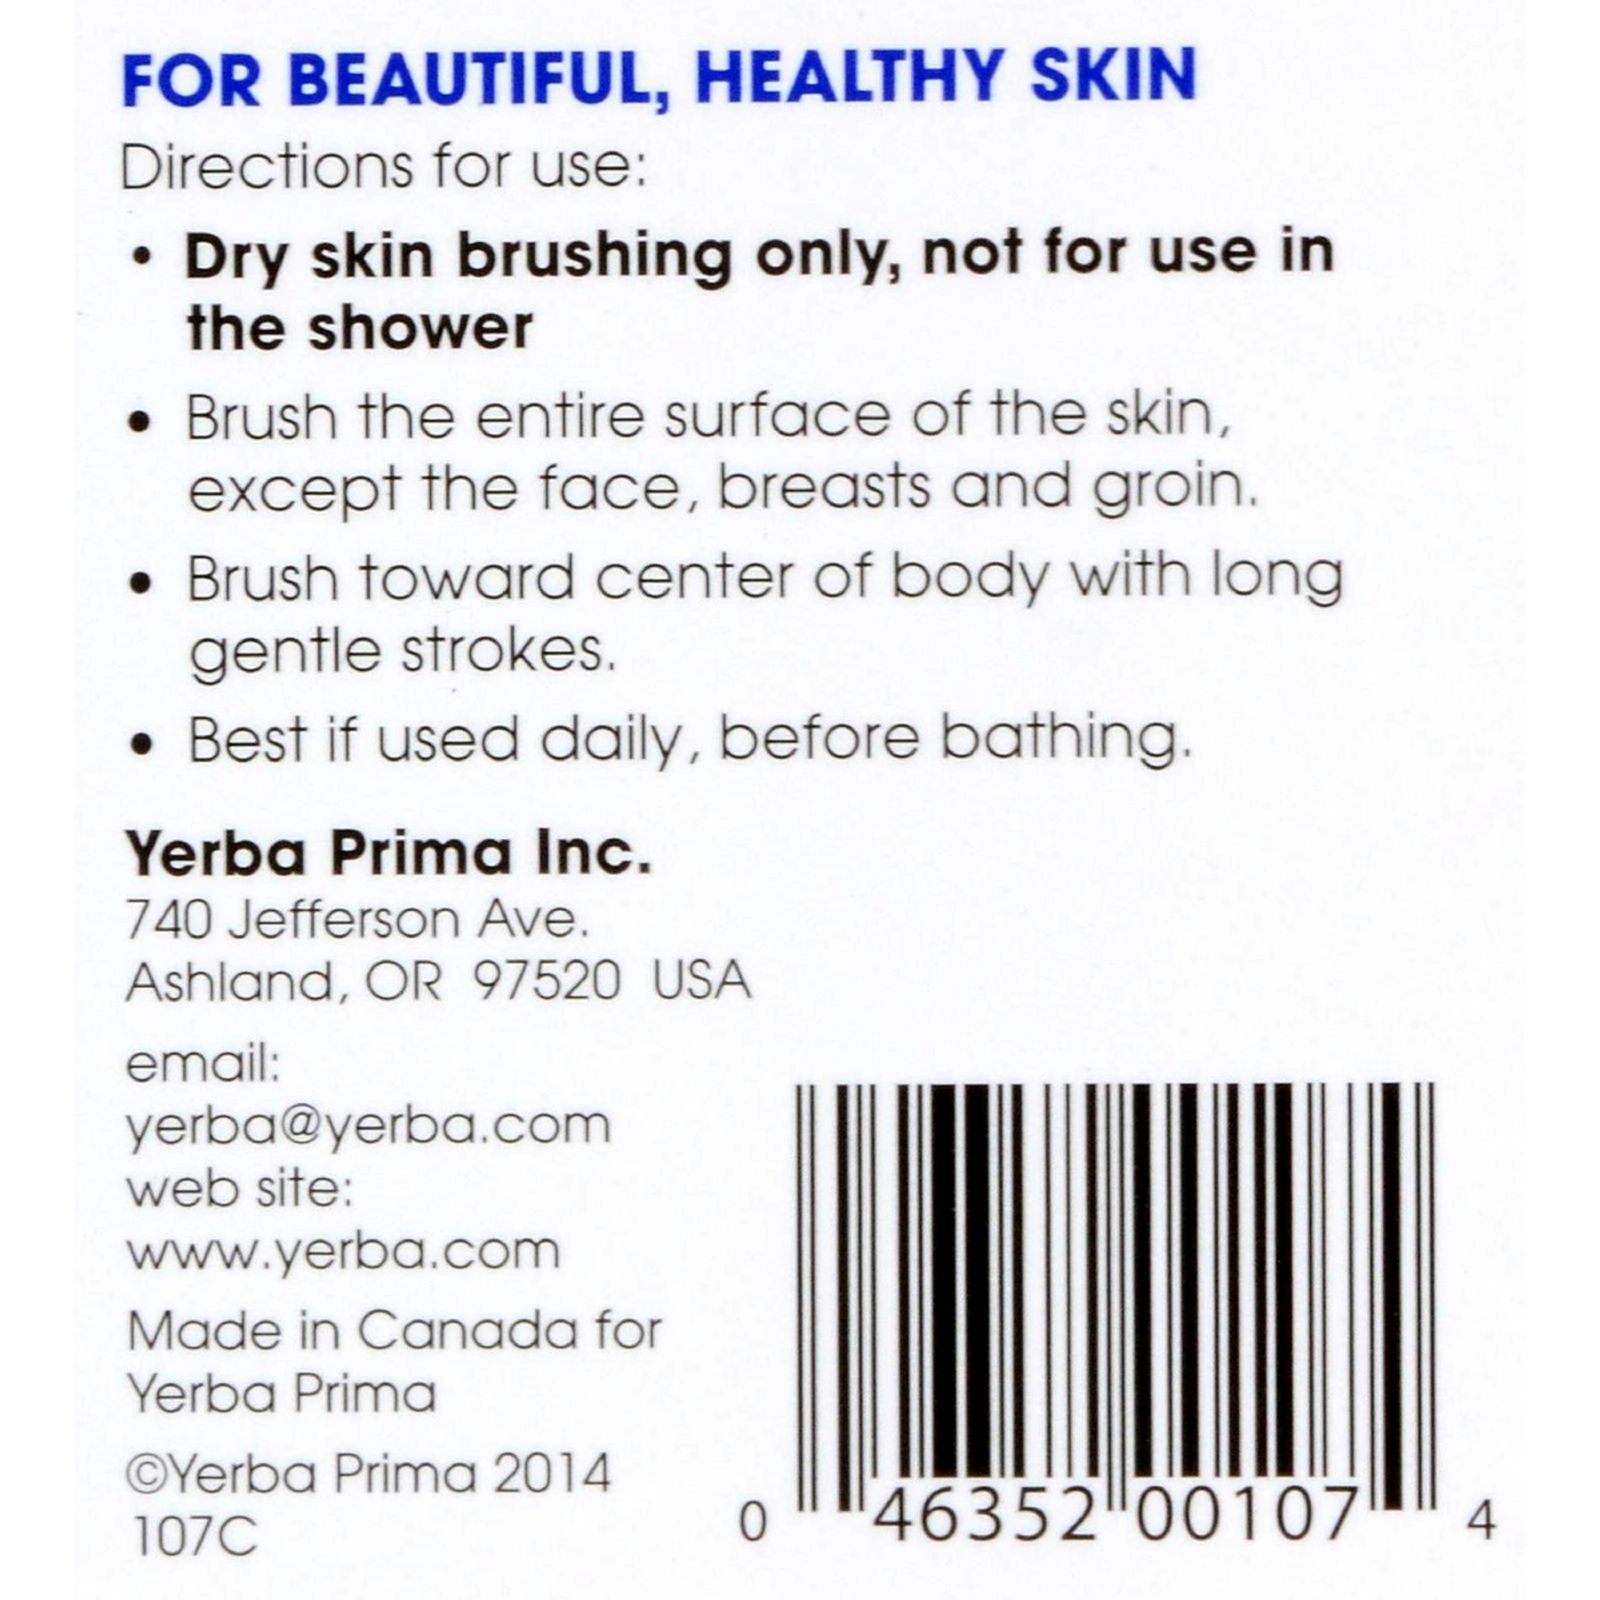 Yerba Prima Tampico Skin Brush - 1 Brush